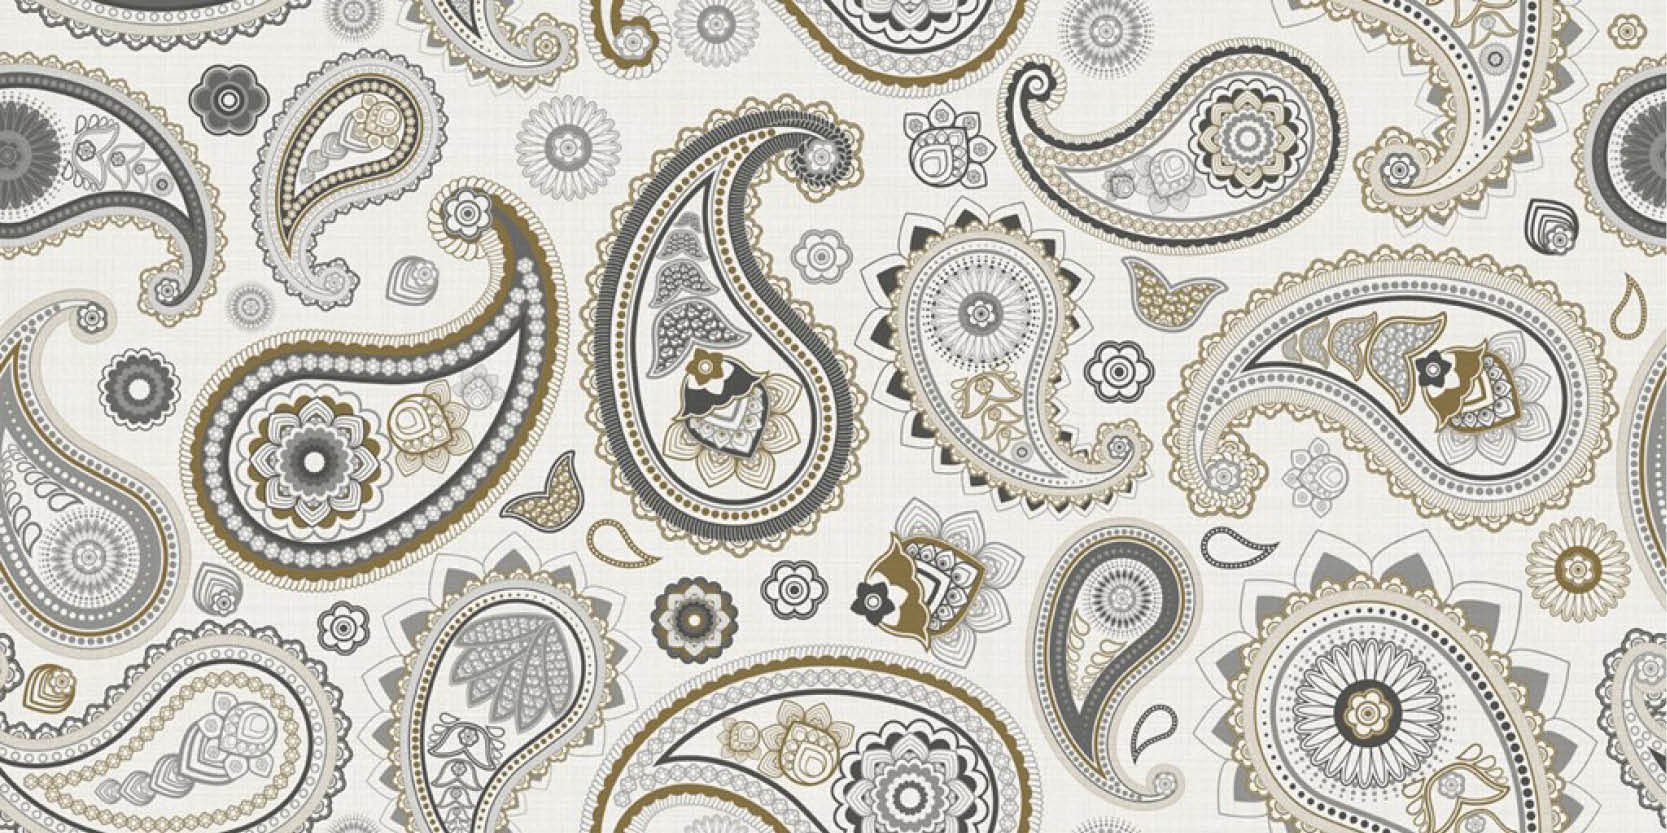 sammys-designer-flooring-tile-full-size-paisley-white-pattern.jpg